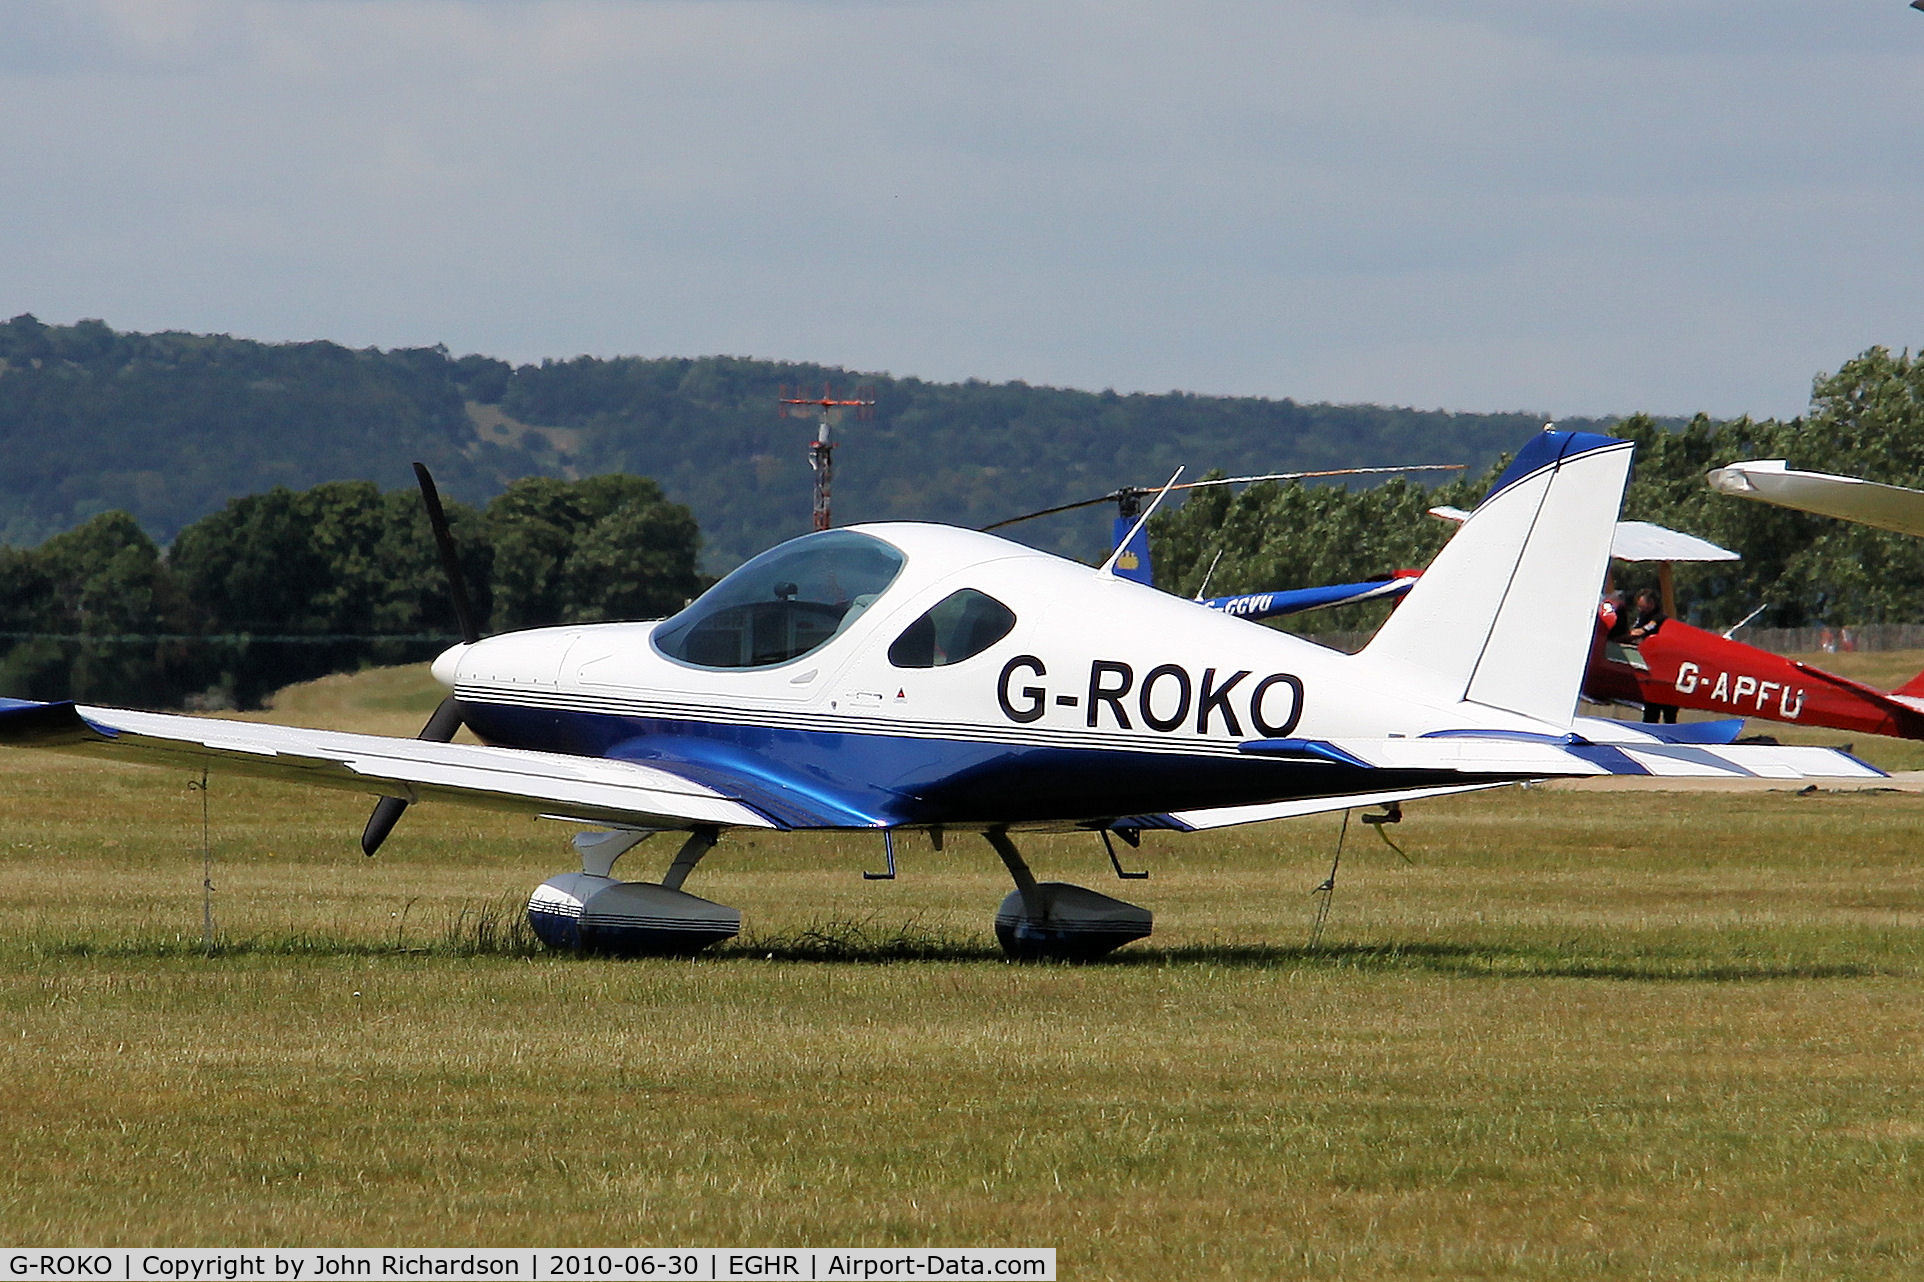 G-ROKO, 2009 Roko Aero NG4 HD C/N 020/2009, Parked at Goodwood